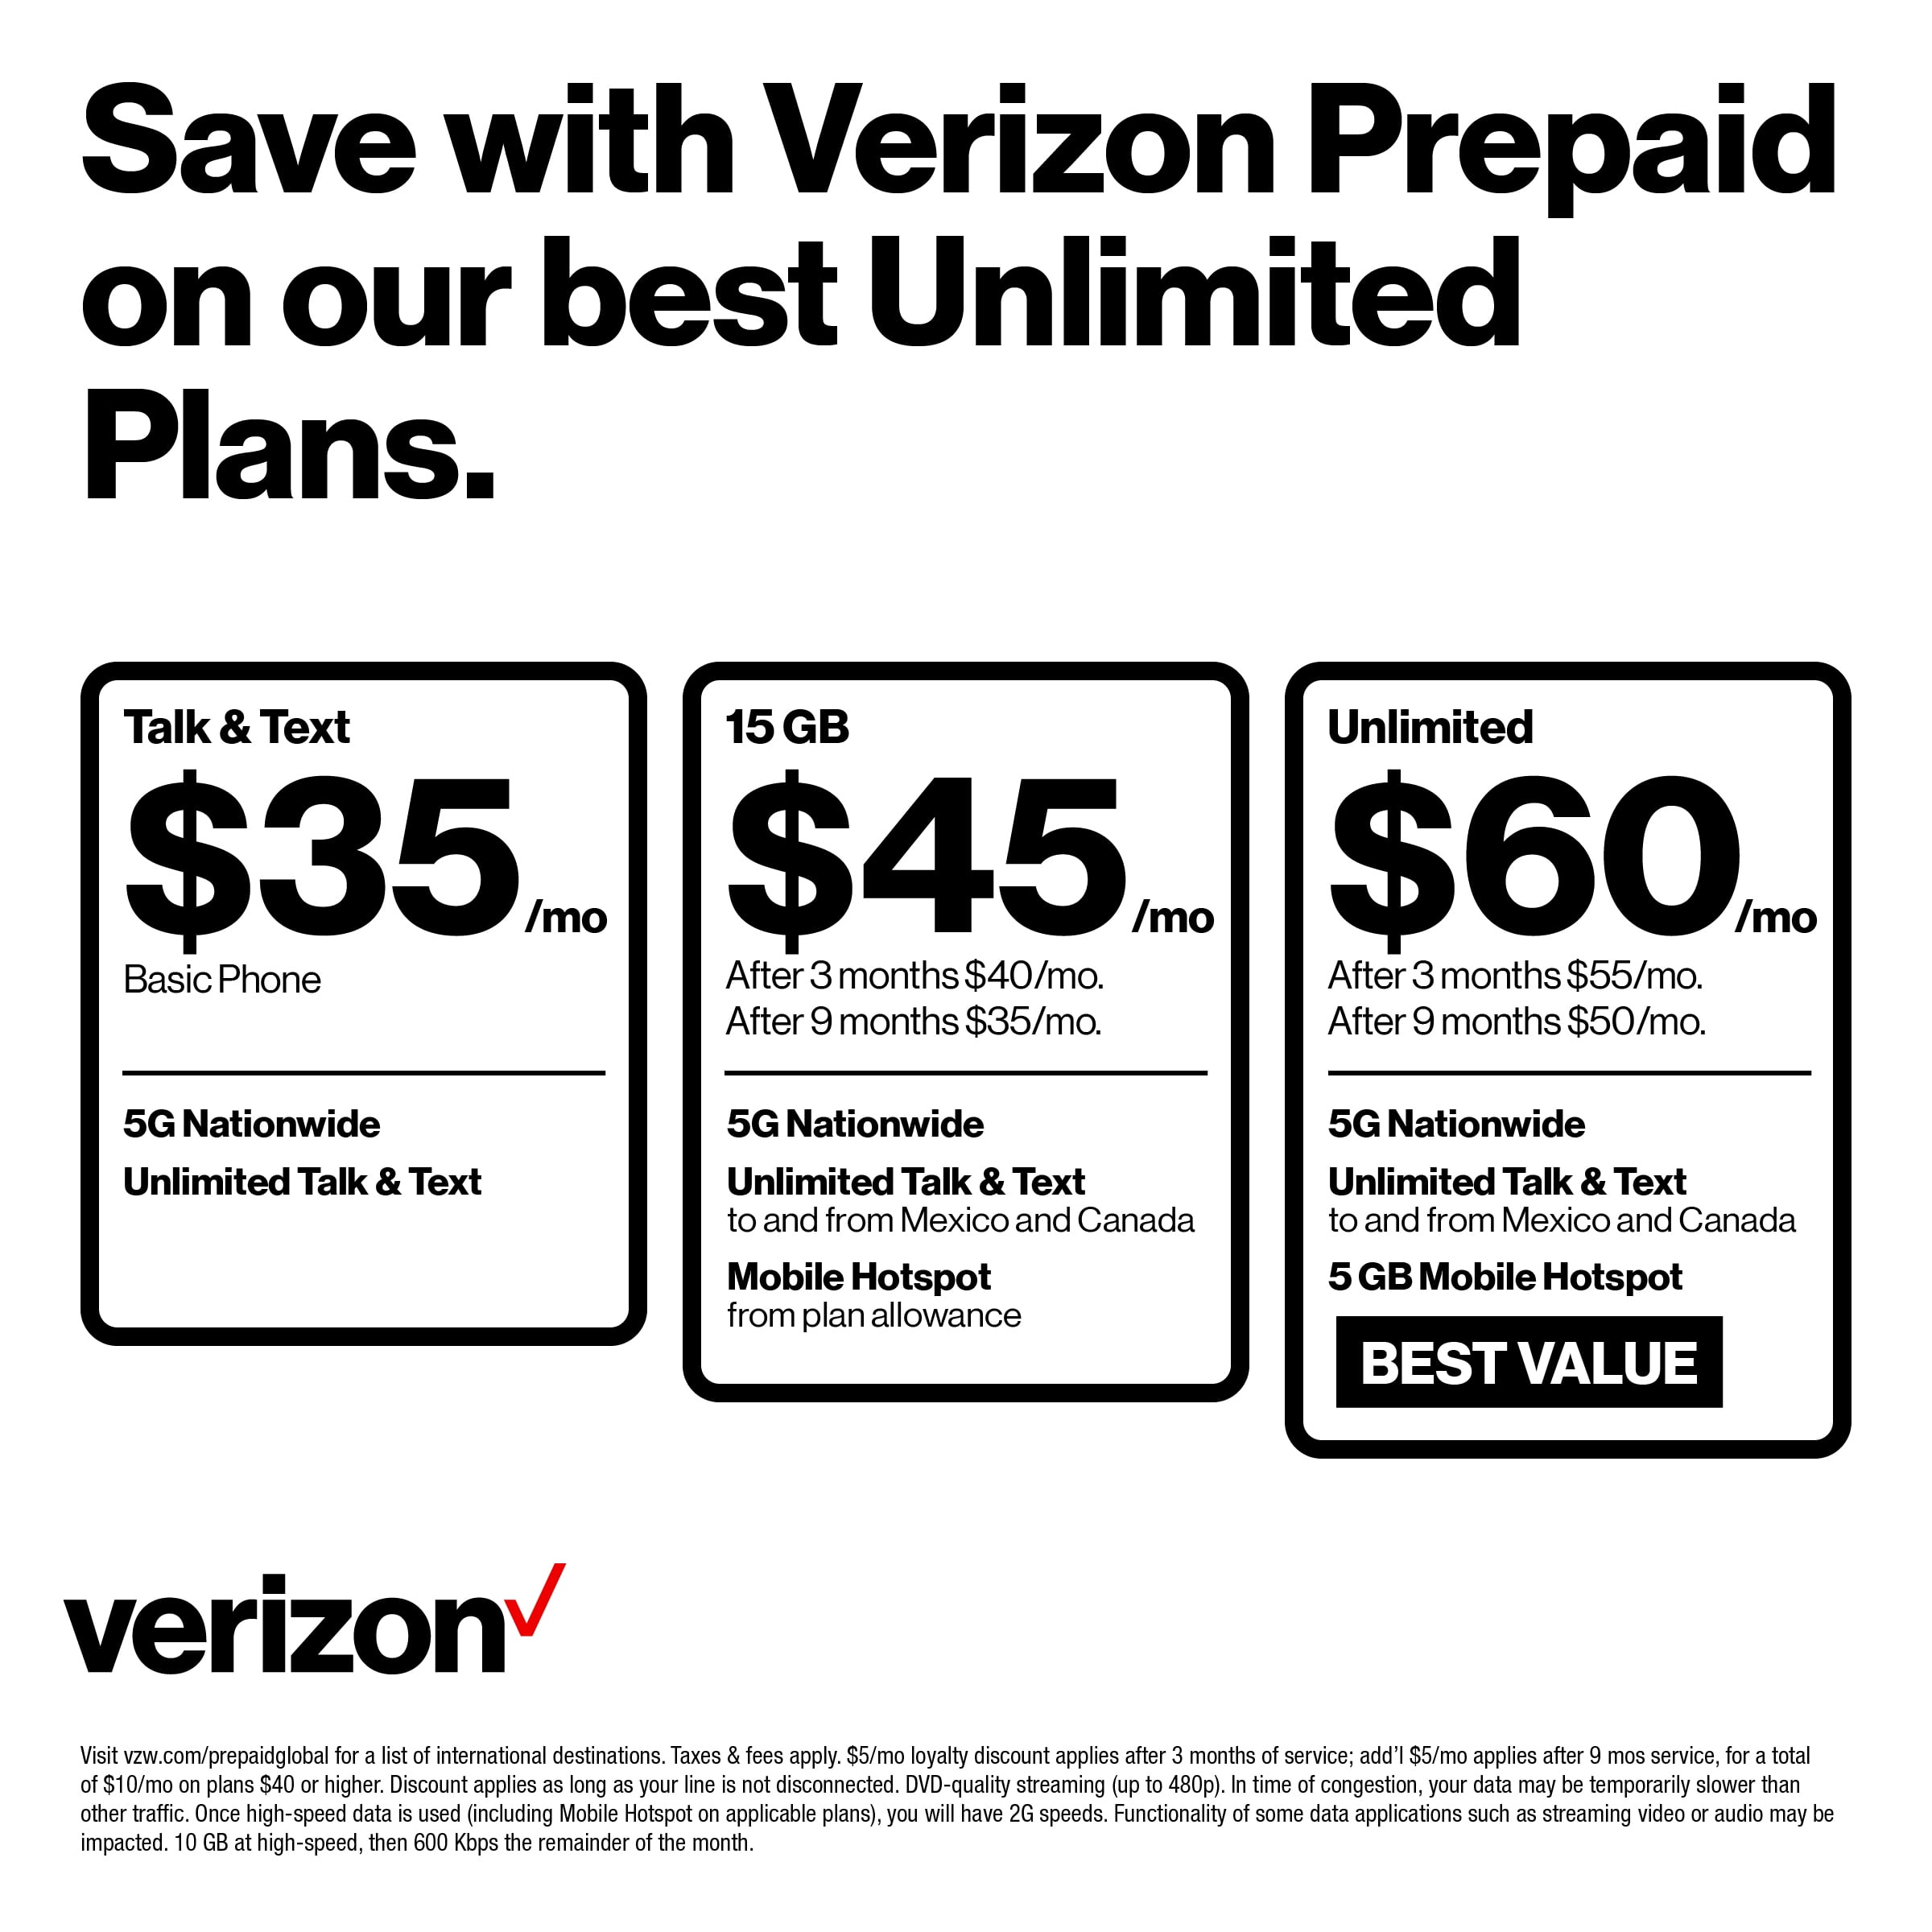 5. How to switch to Verizon Wireless Basic Plan?